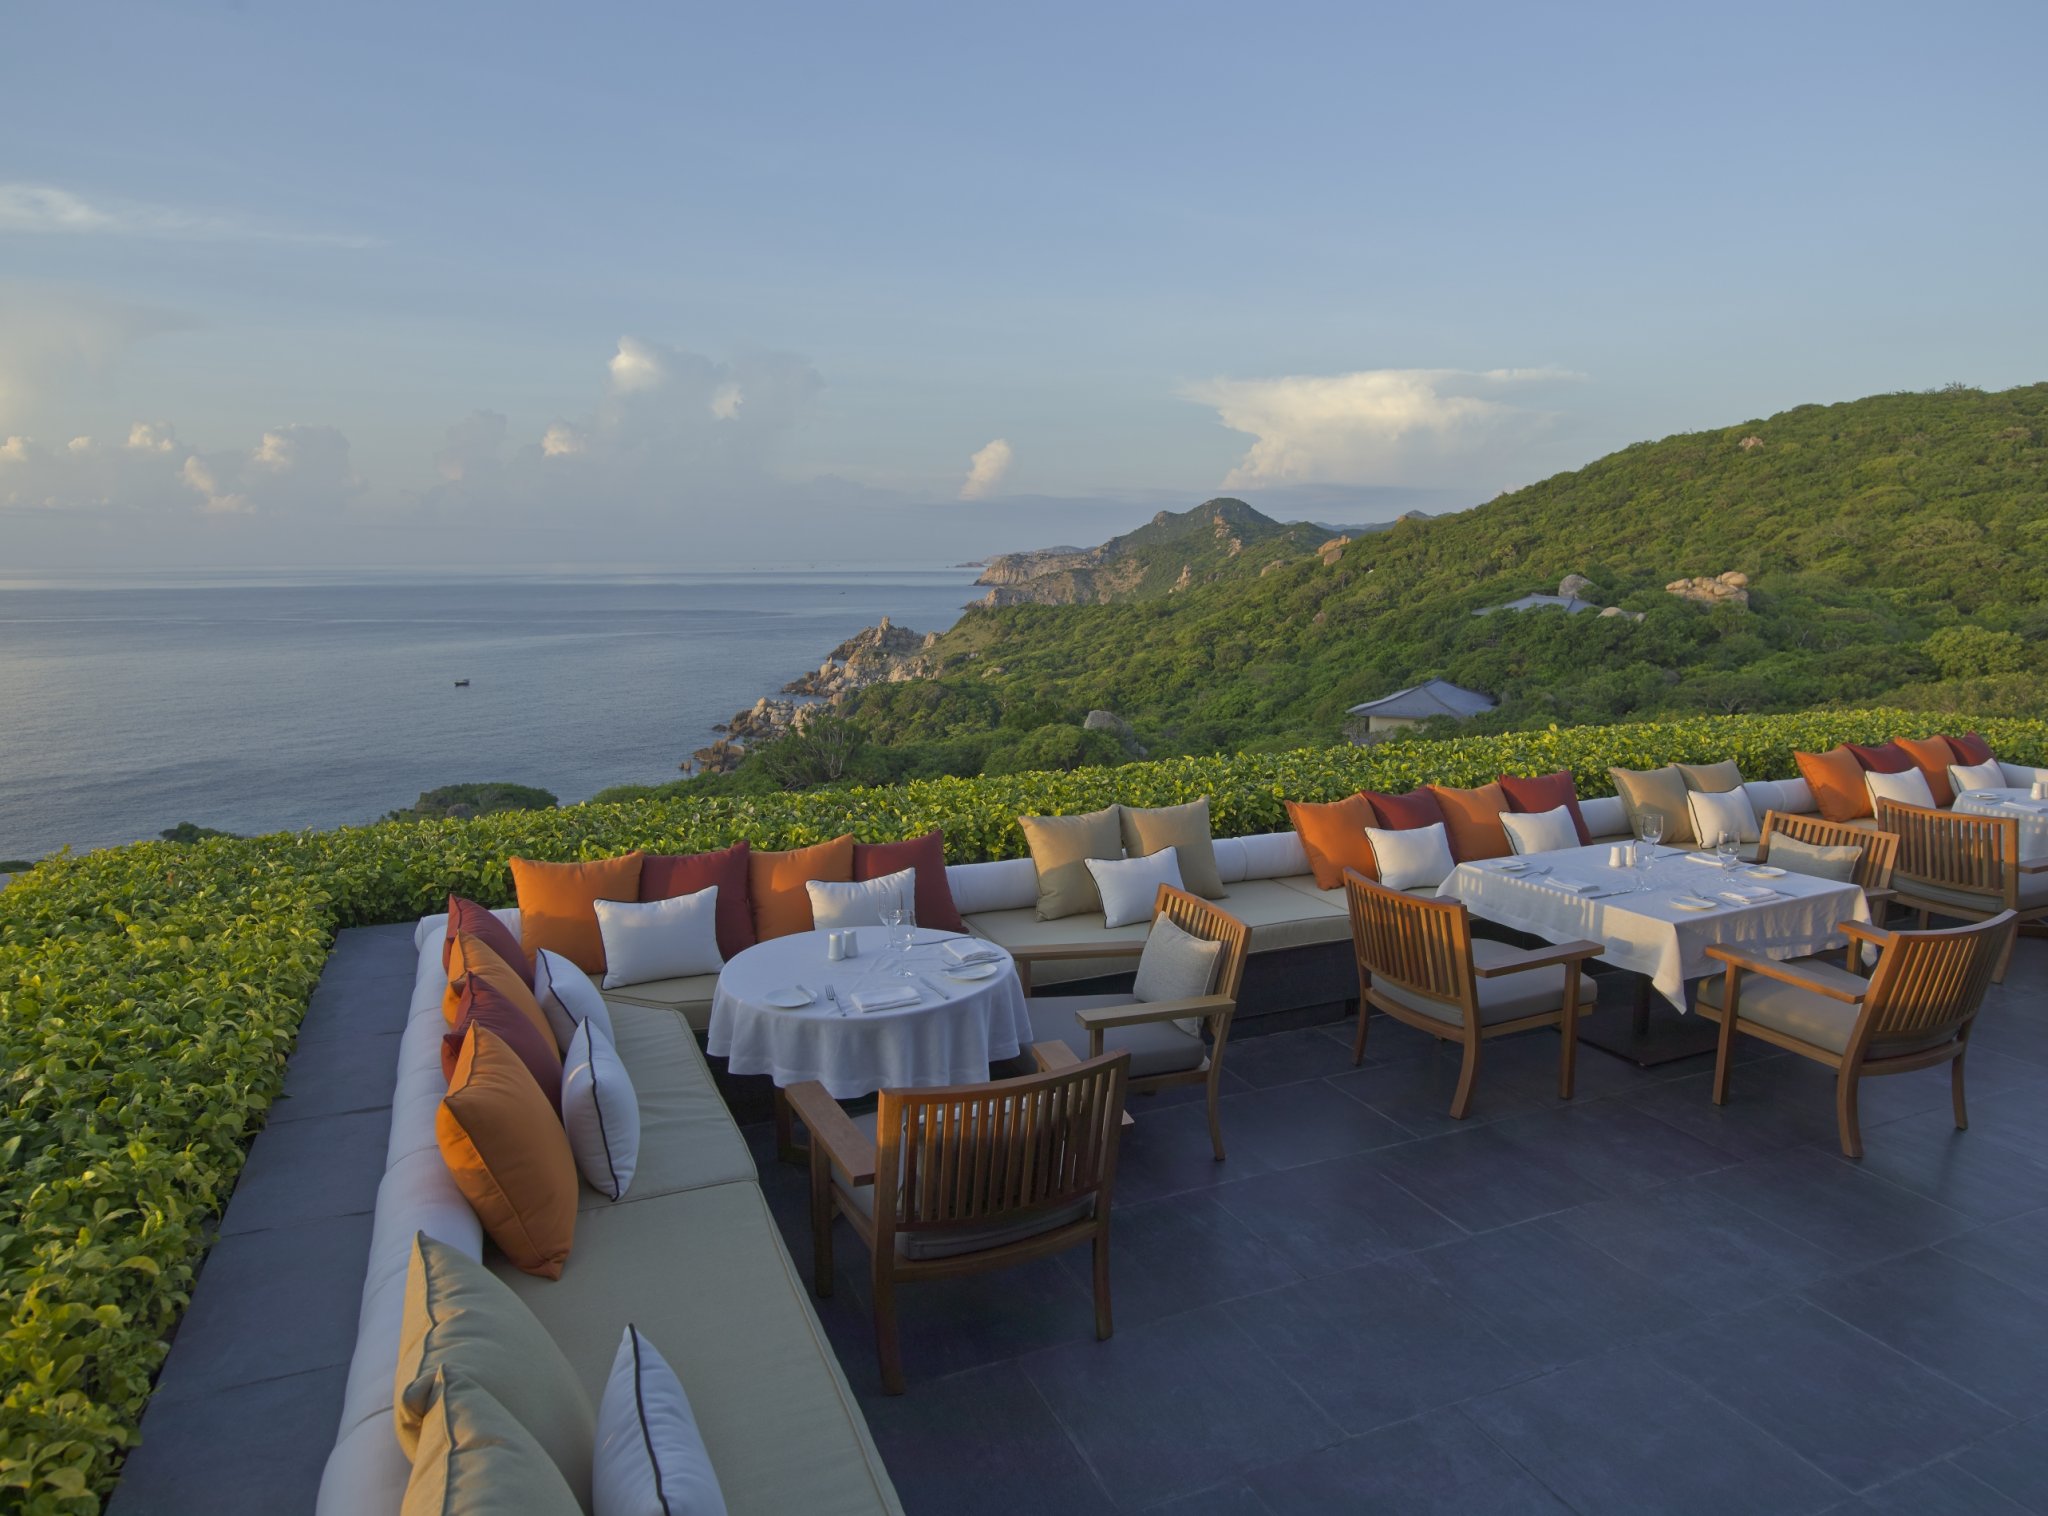 große sitzecke auf der terrasse des luxushotels amanoi mit blick in die weite grüne landschaft und das meer